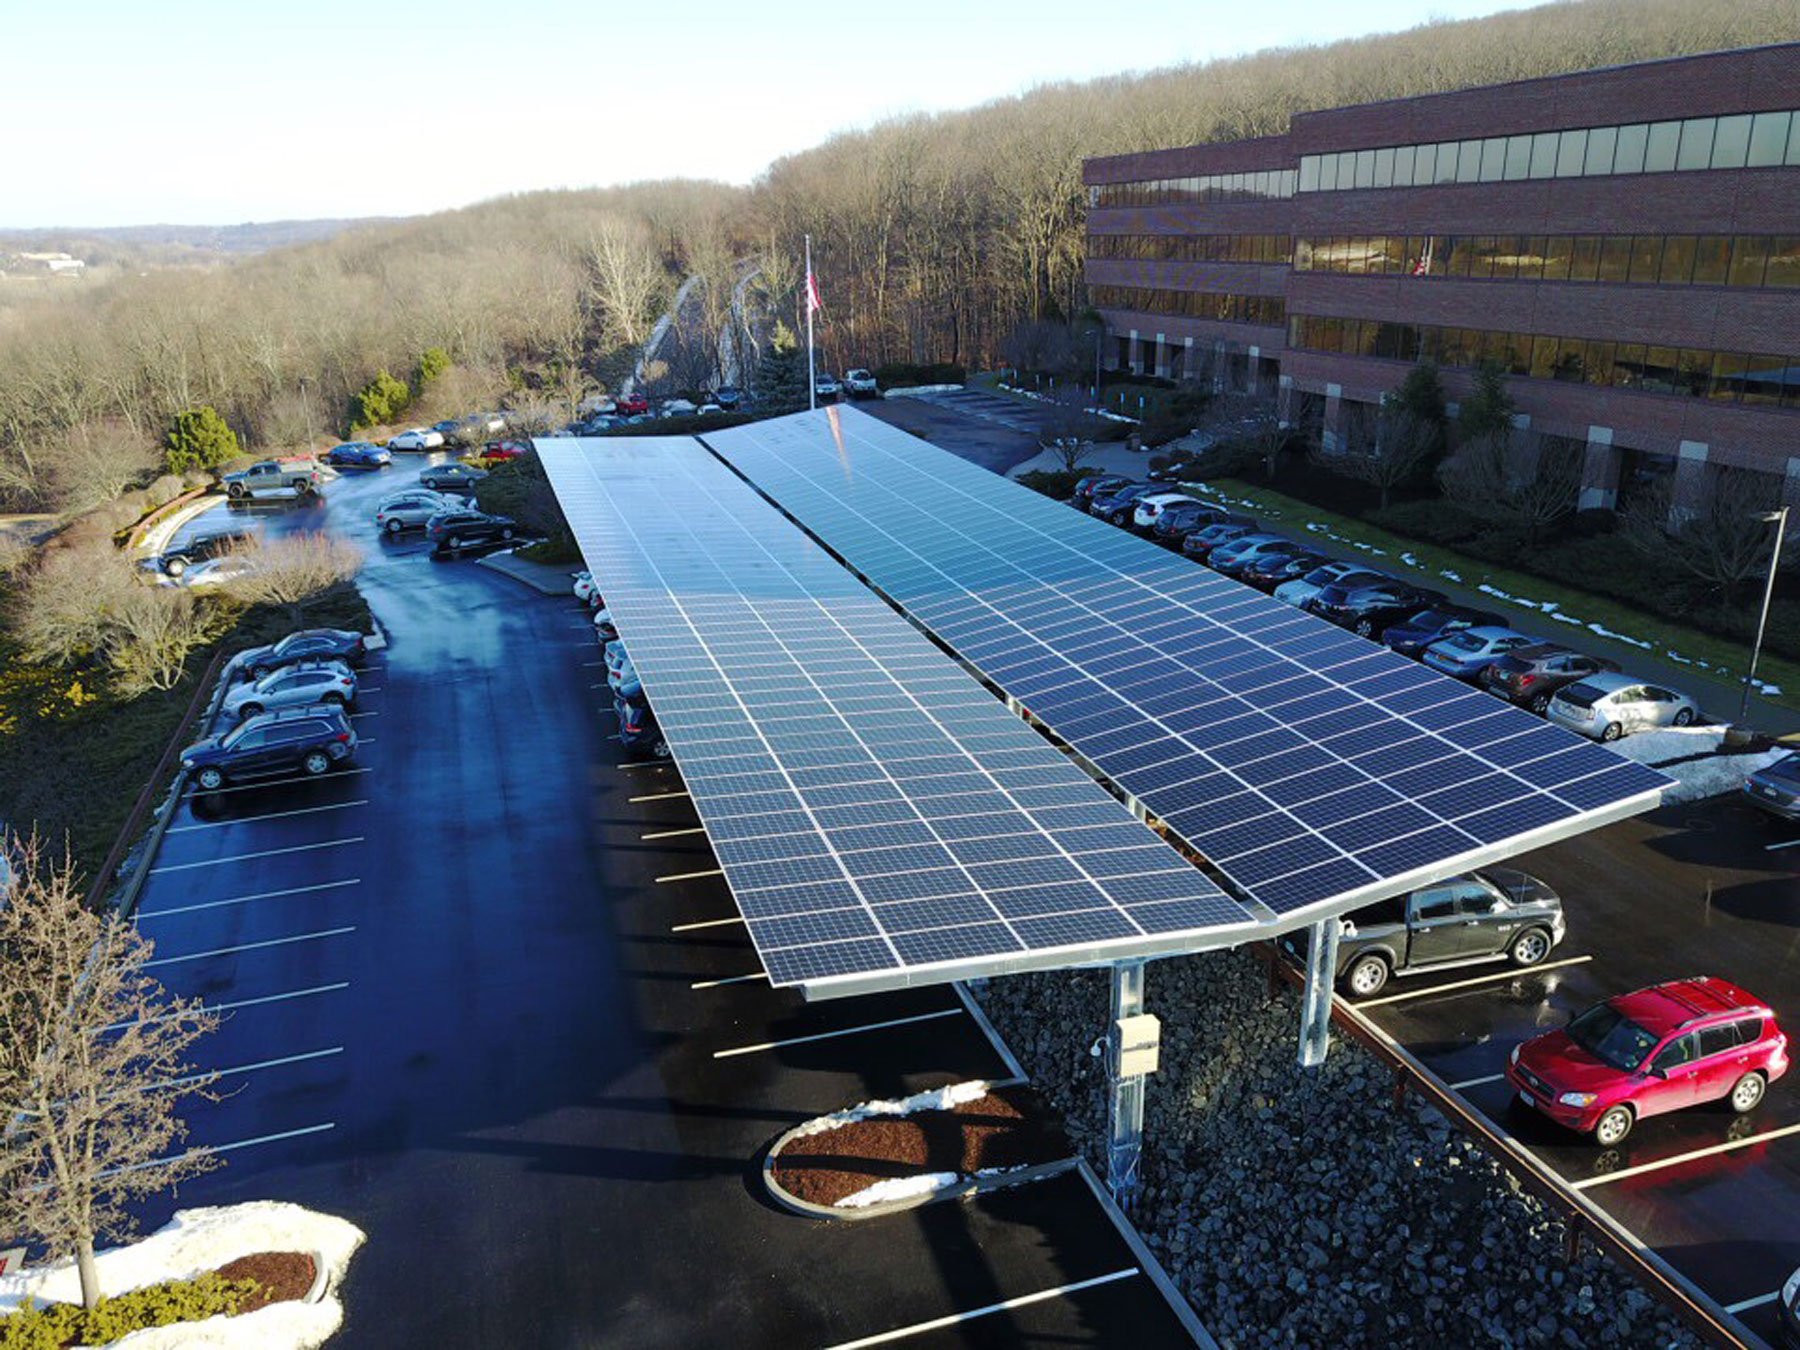 Assembleia Legislativa do MT vai abrigar estacionamento coberto com placas solares para economizar energia